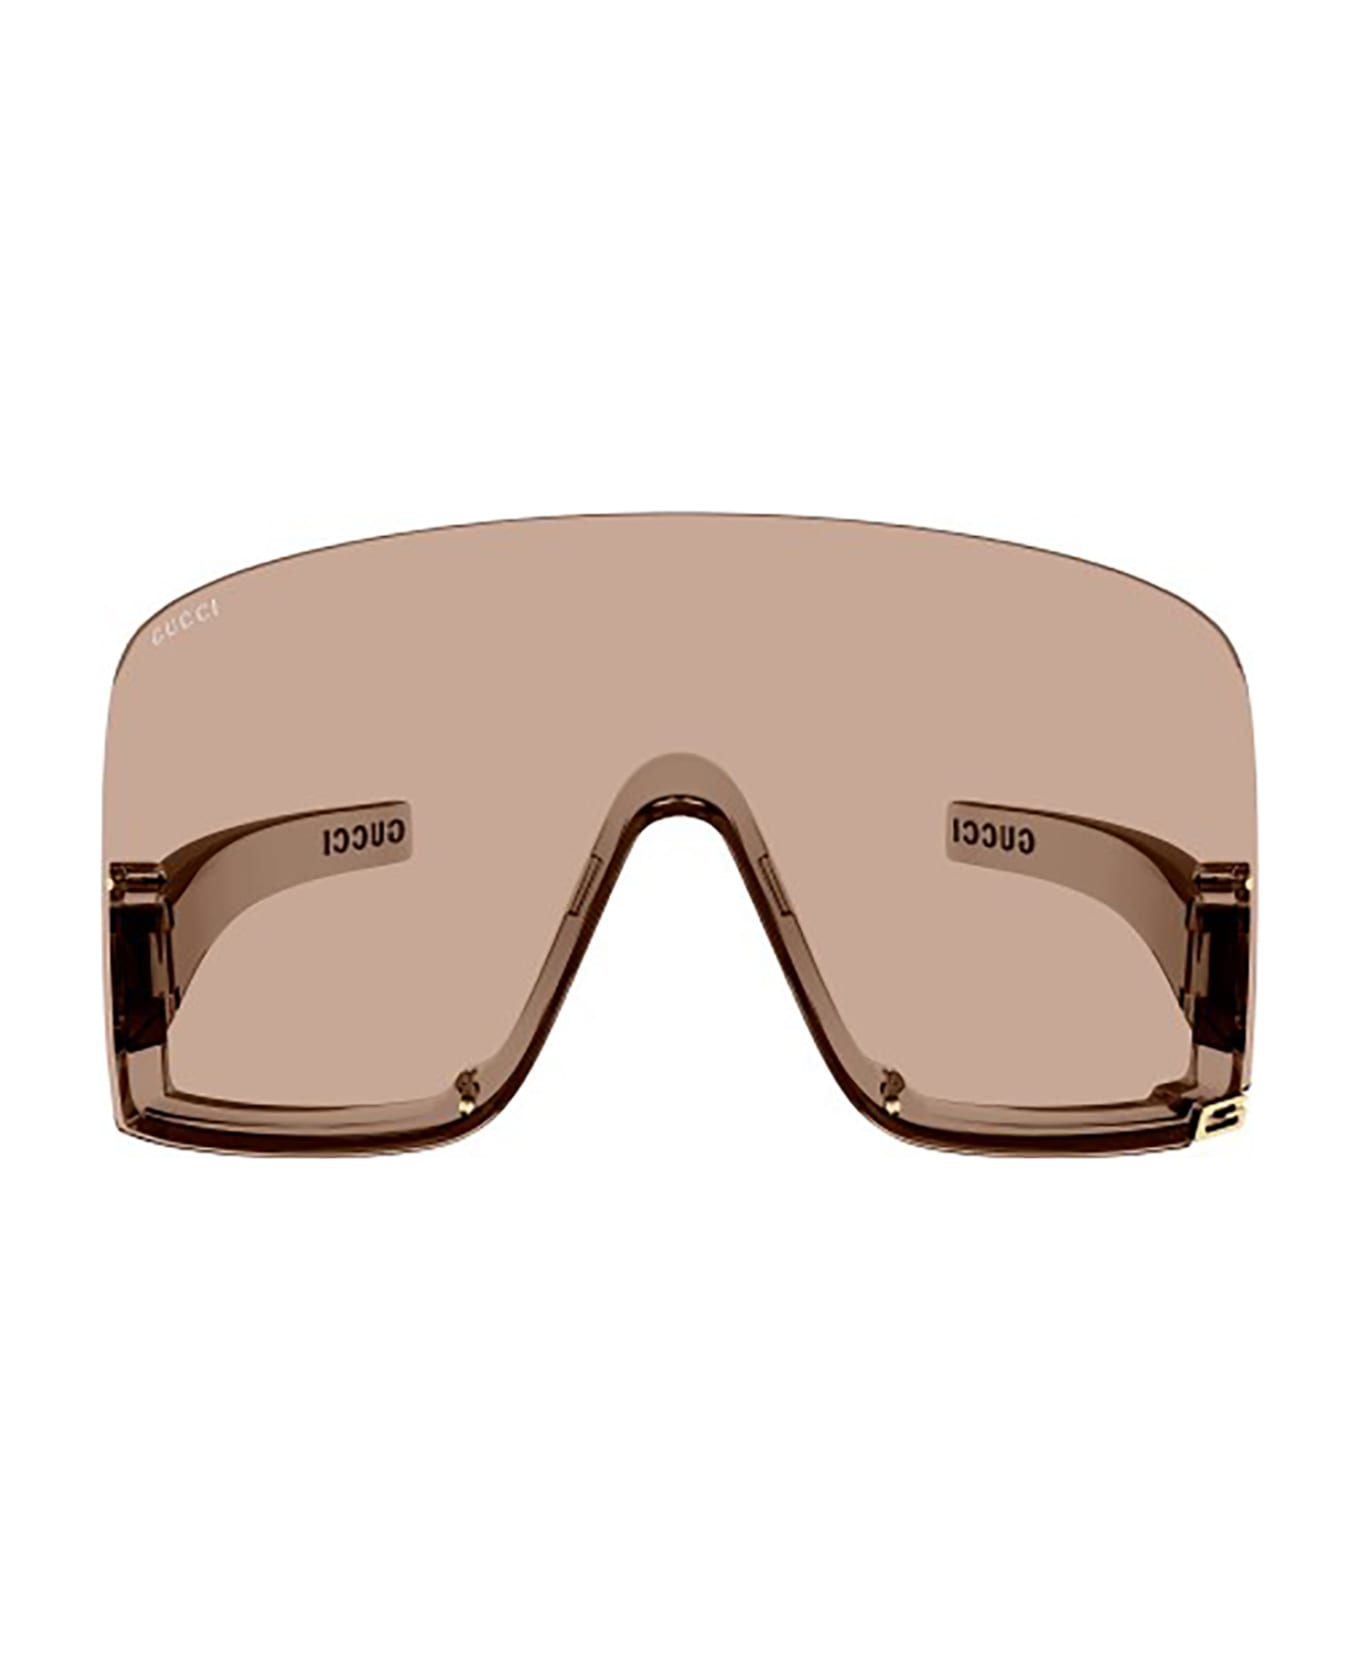 Gucci Eyewear GG1631S Sunglasses - Pink Pink Pink